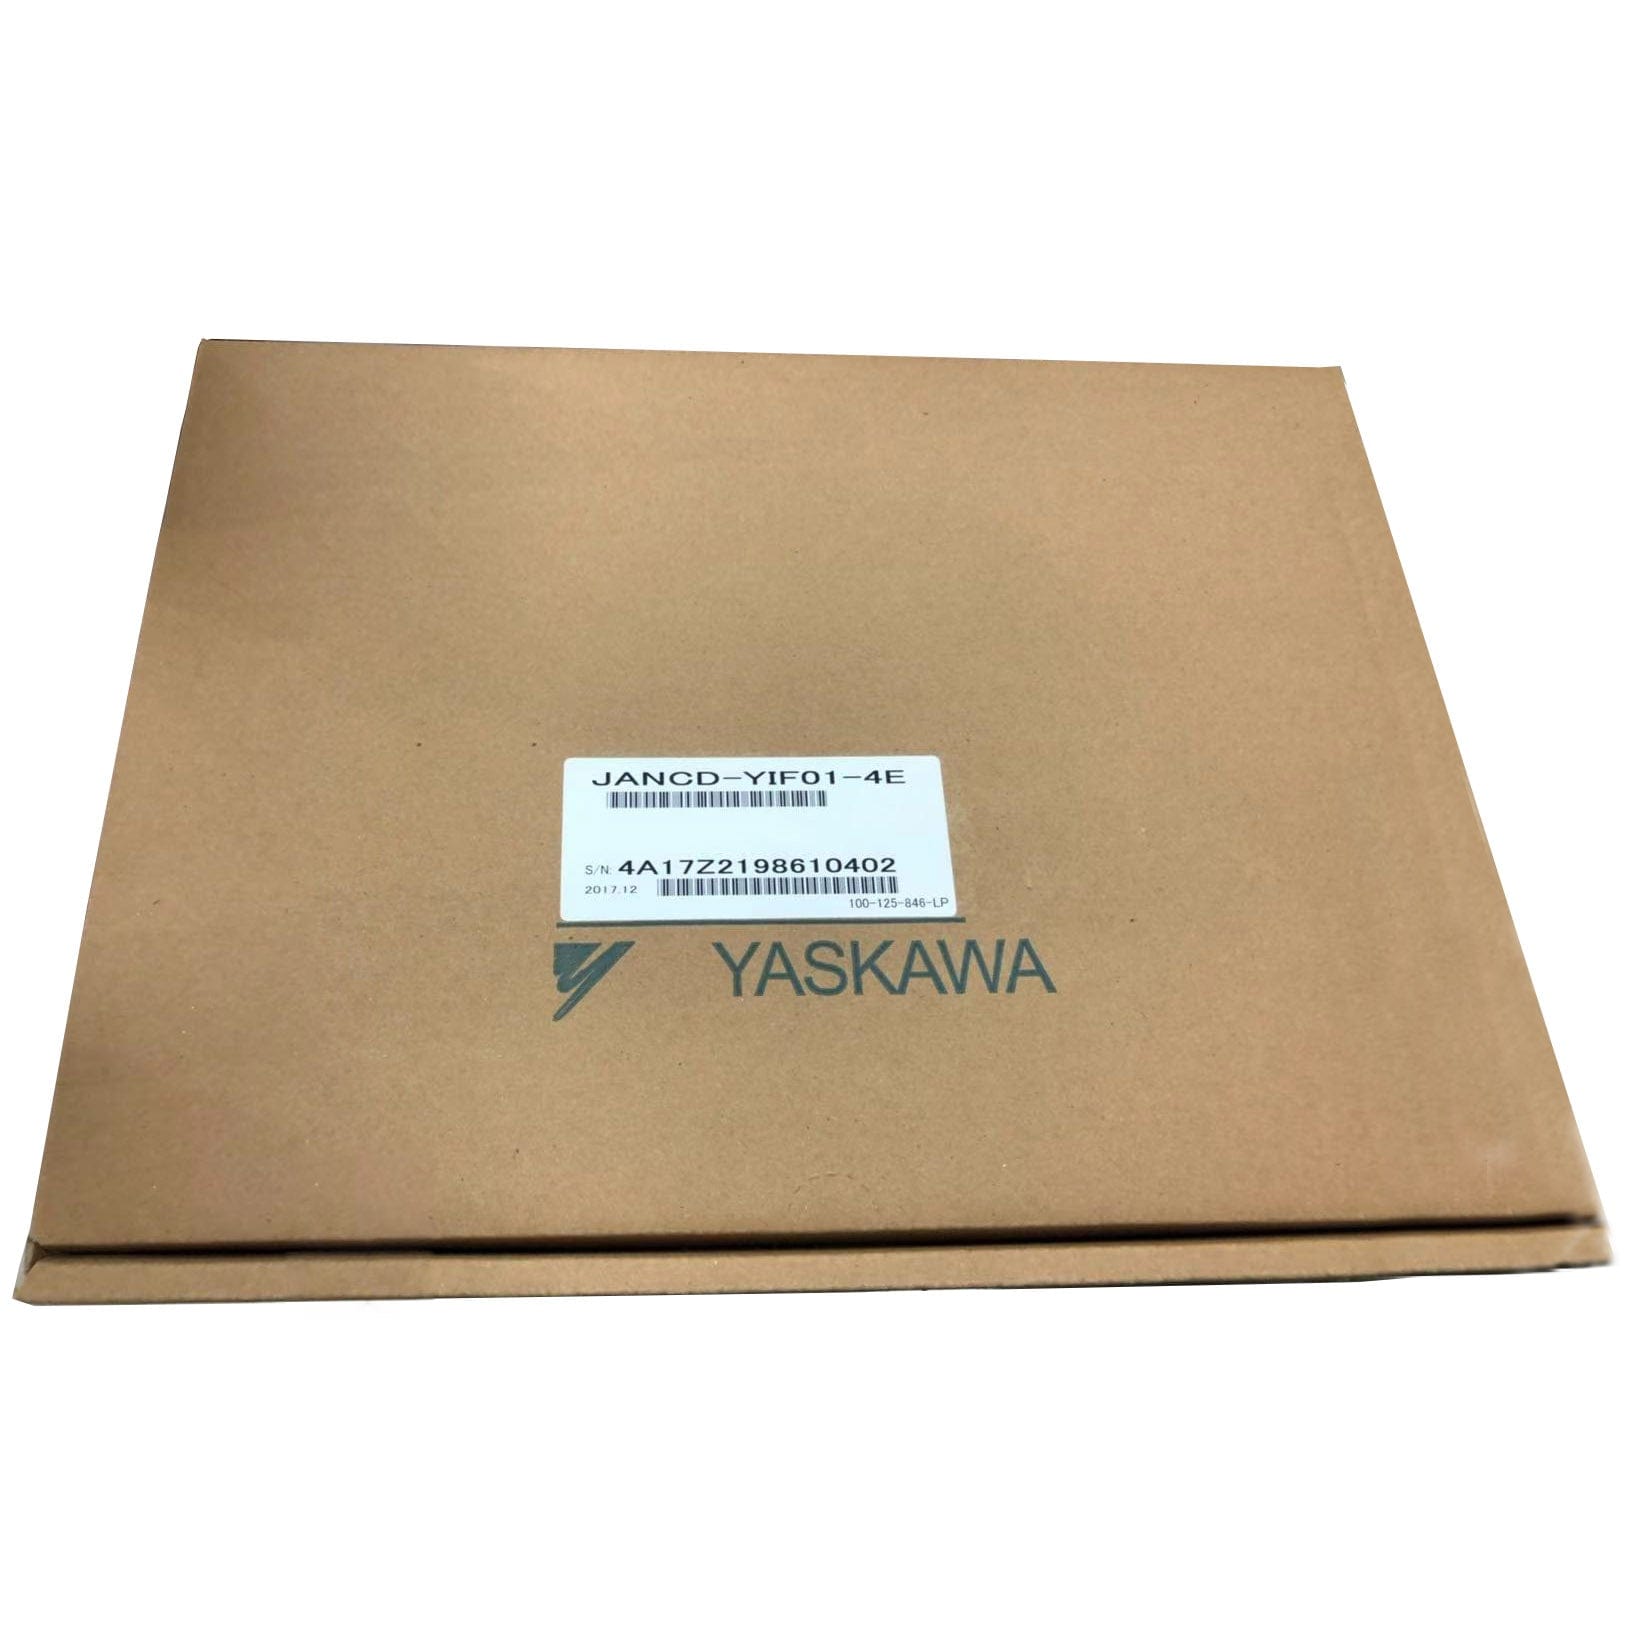 Yaskawa Robot JANCD-YIF01-4E DX100